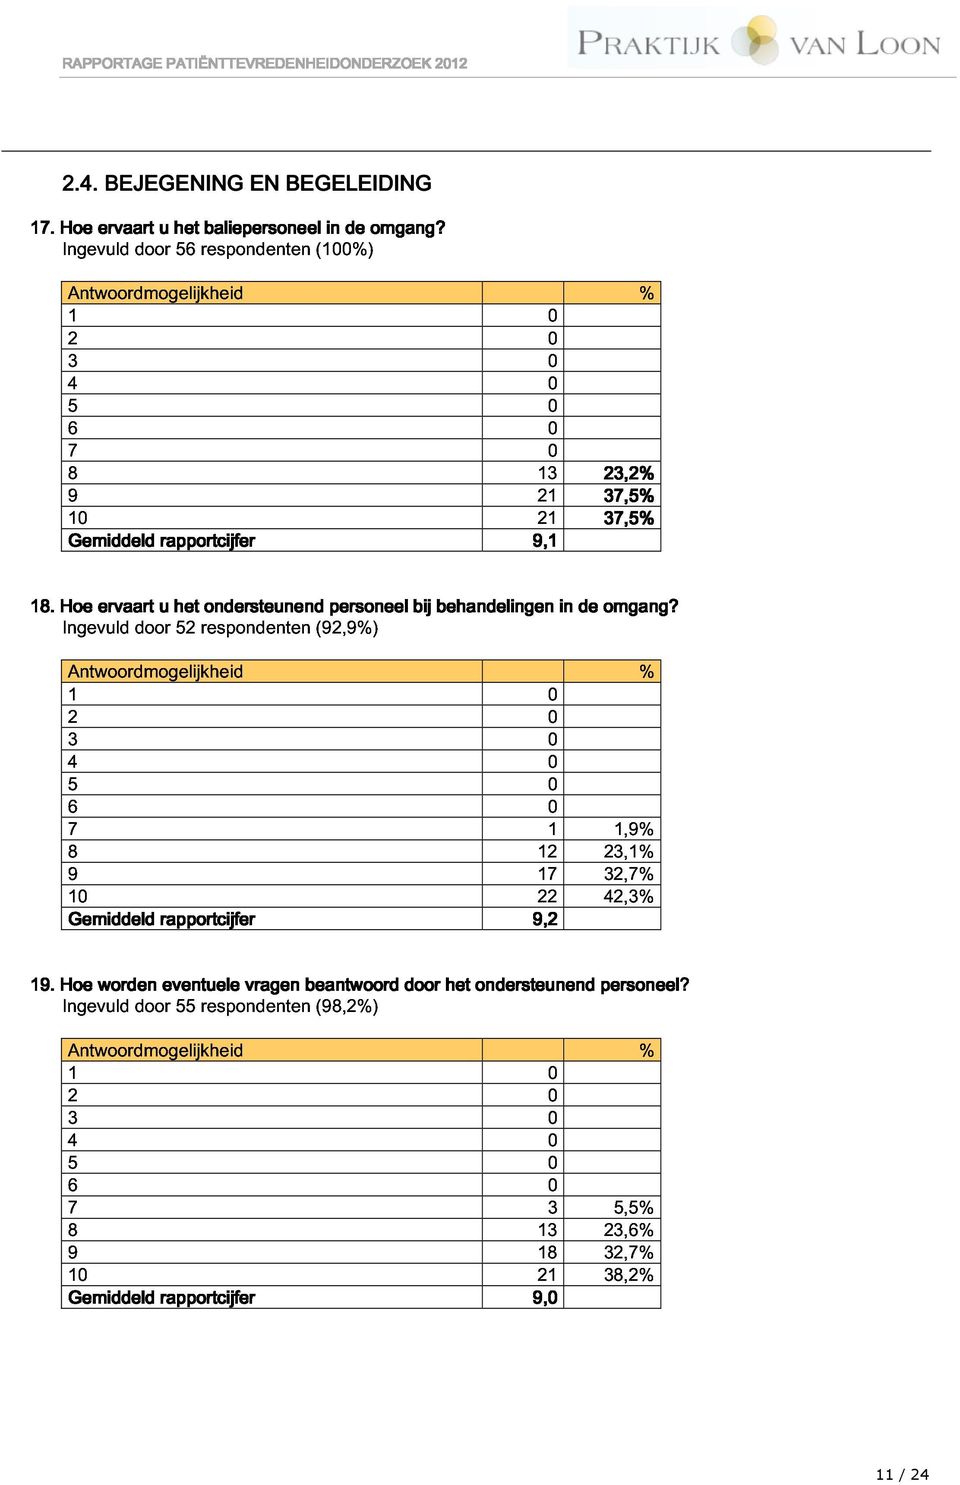 . He Ingevuld Antwrdmgelijkheid ervaart dr u het 52 respndenten ndersteunend (92,9%) persneel bij behandelingen in de mgang?